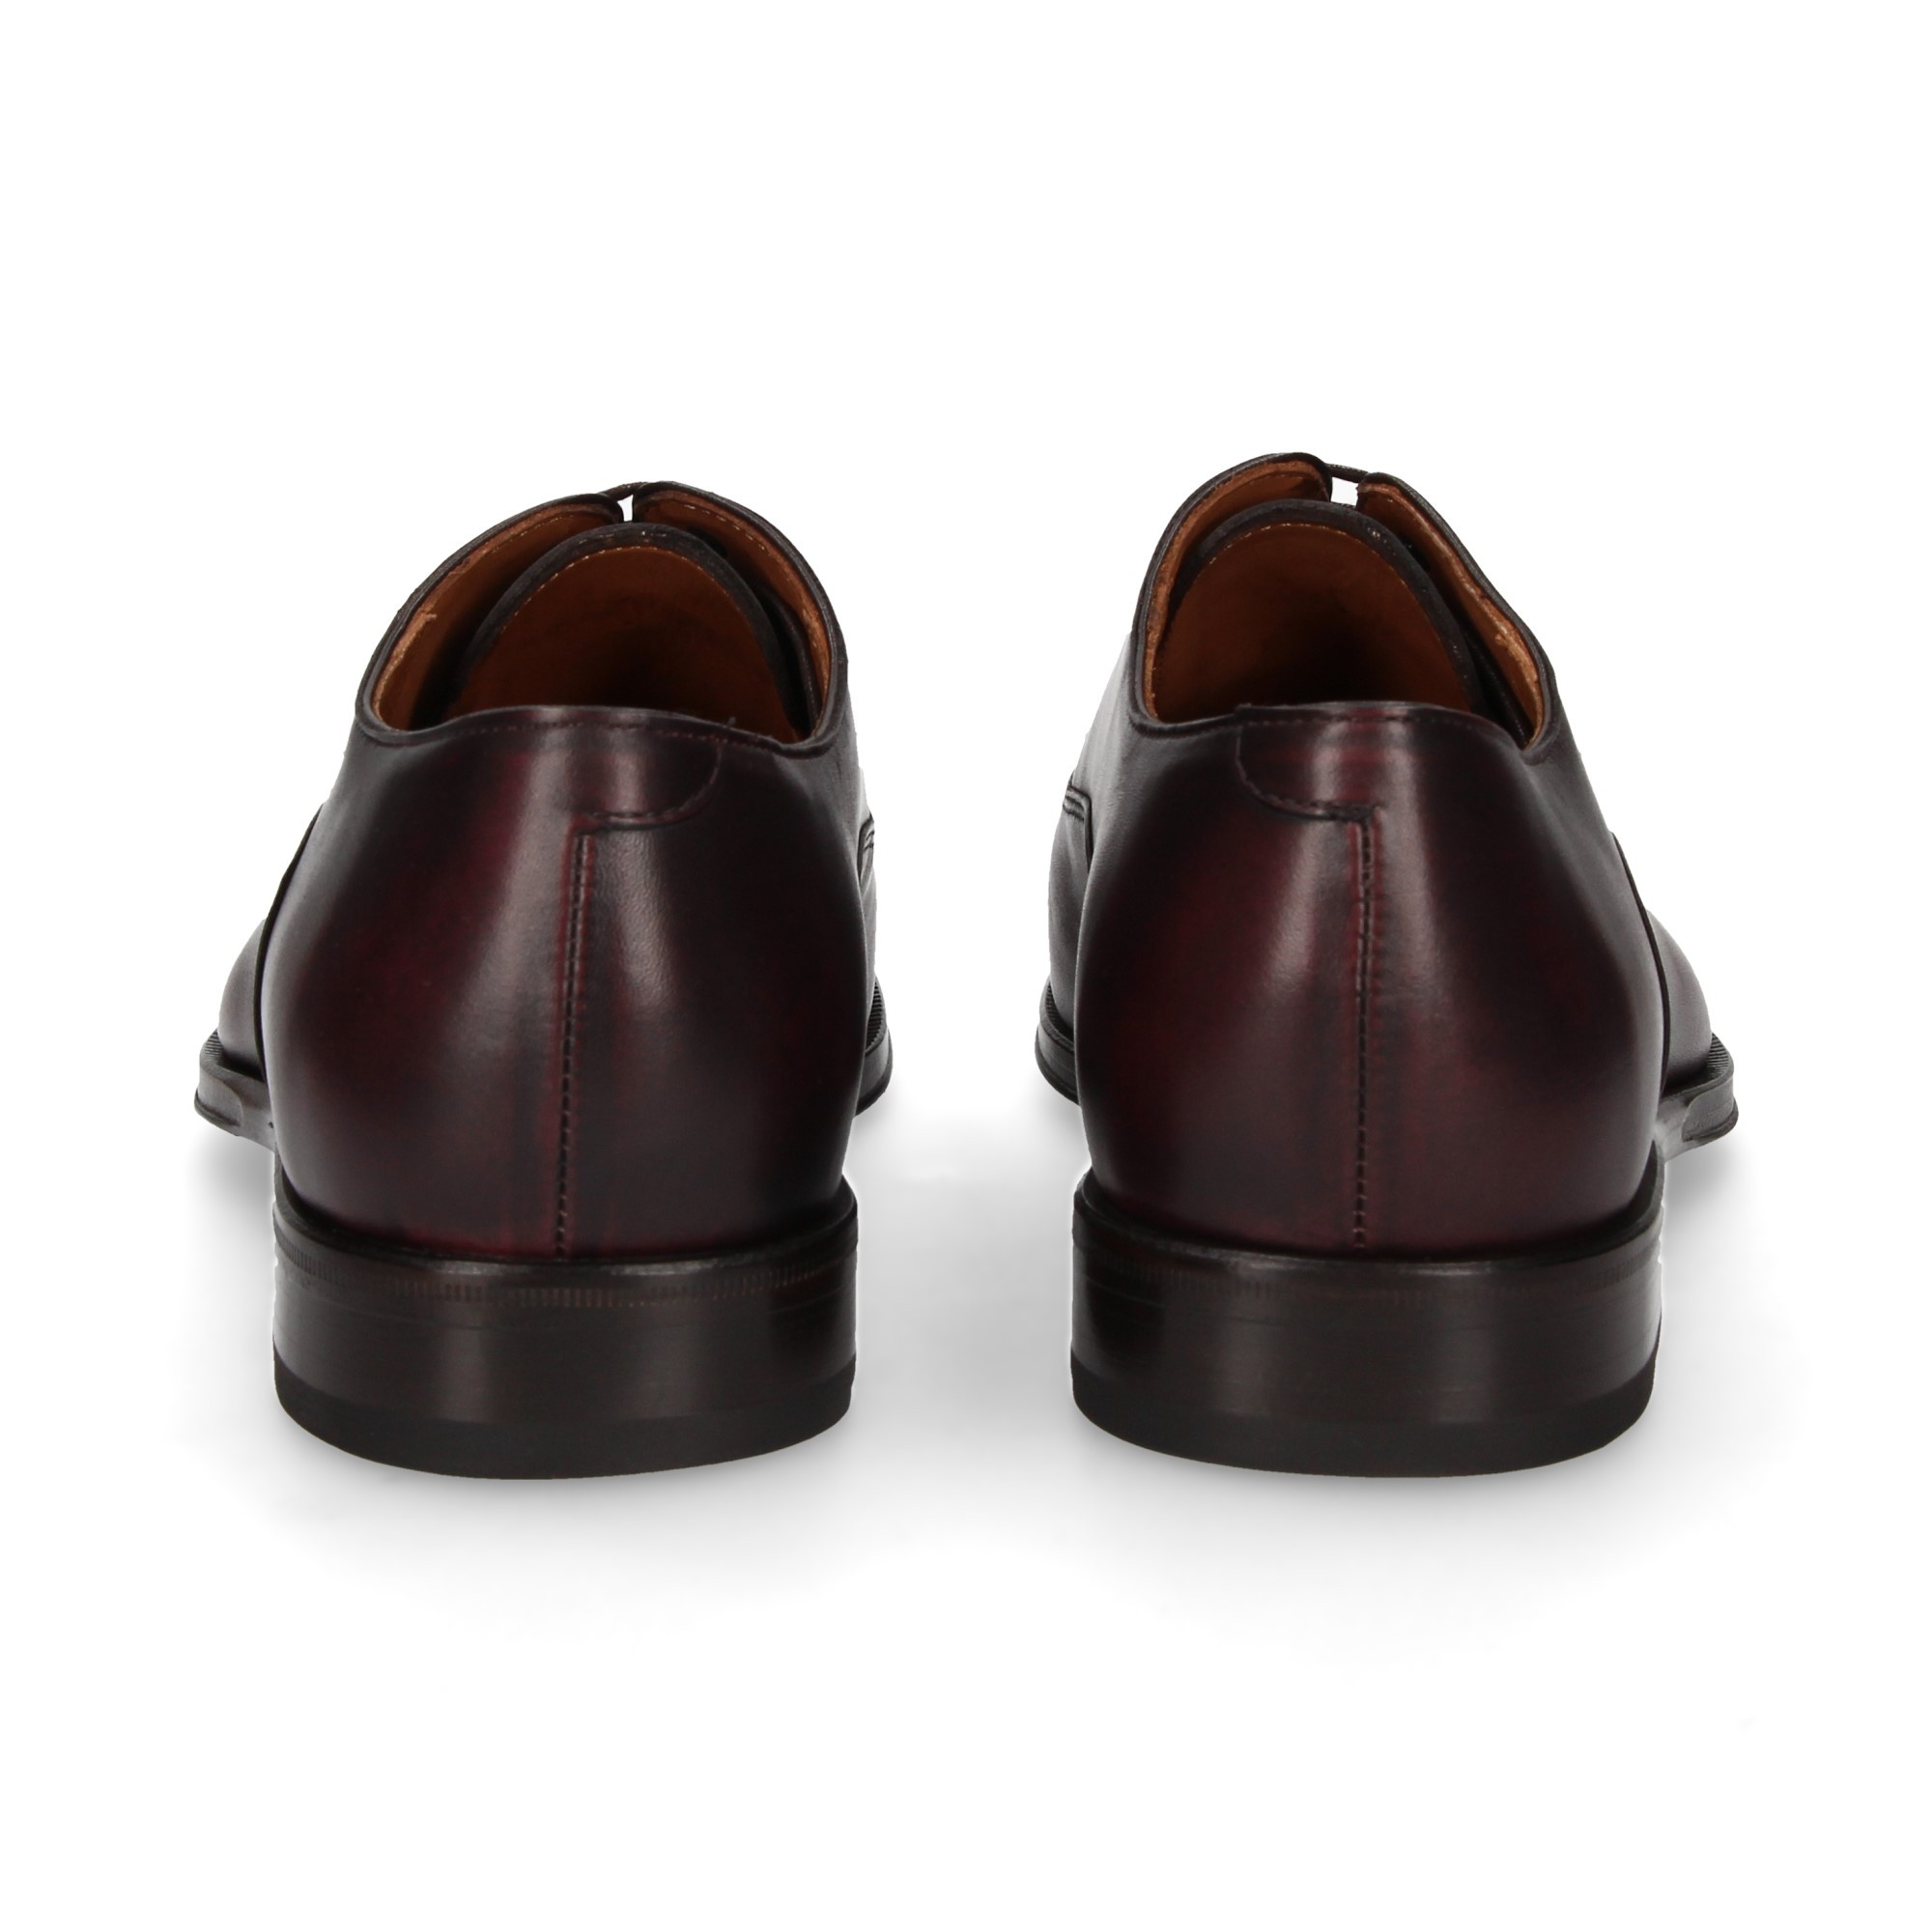 Lottusse Maison Oxfords T1650, Black Leather Mens Shoe Size USA 11, EU 45